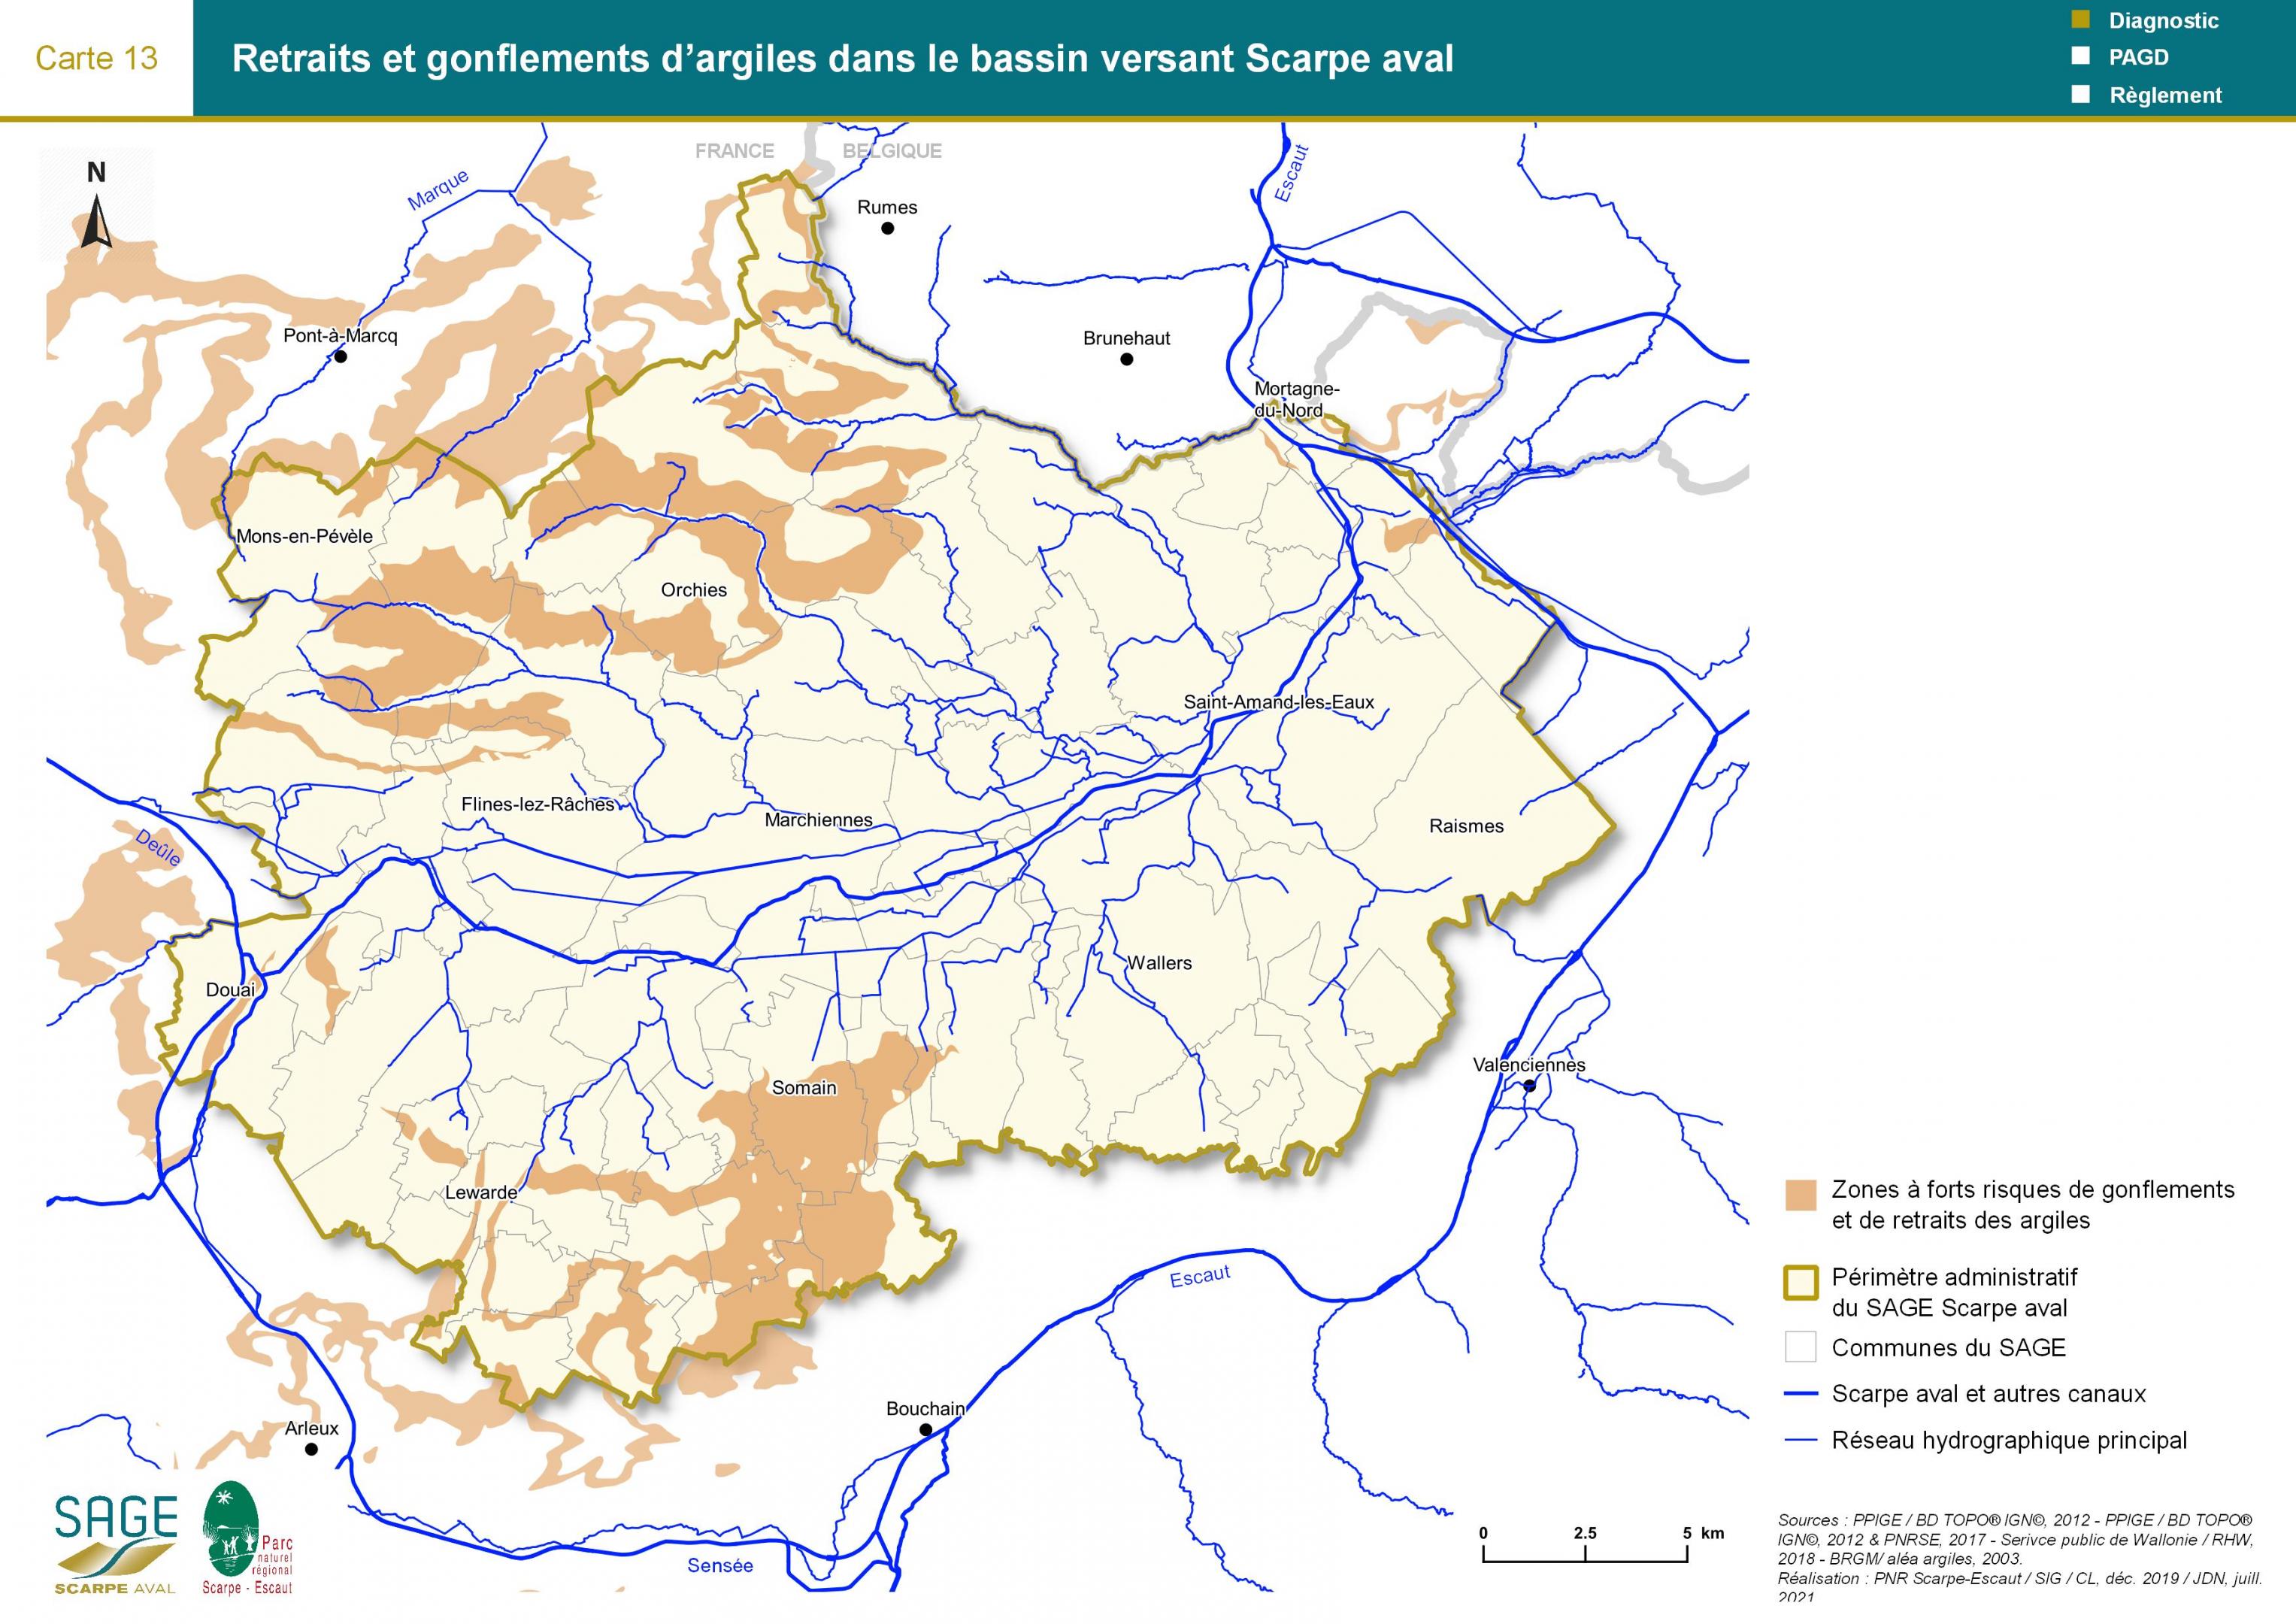 Etat des lieux - Carte 13 : Retraits et gonflements d’argiles dans le bassin versant Scarpe aval